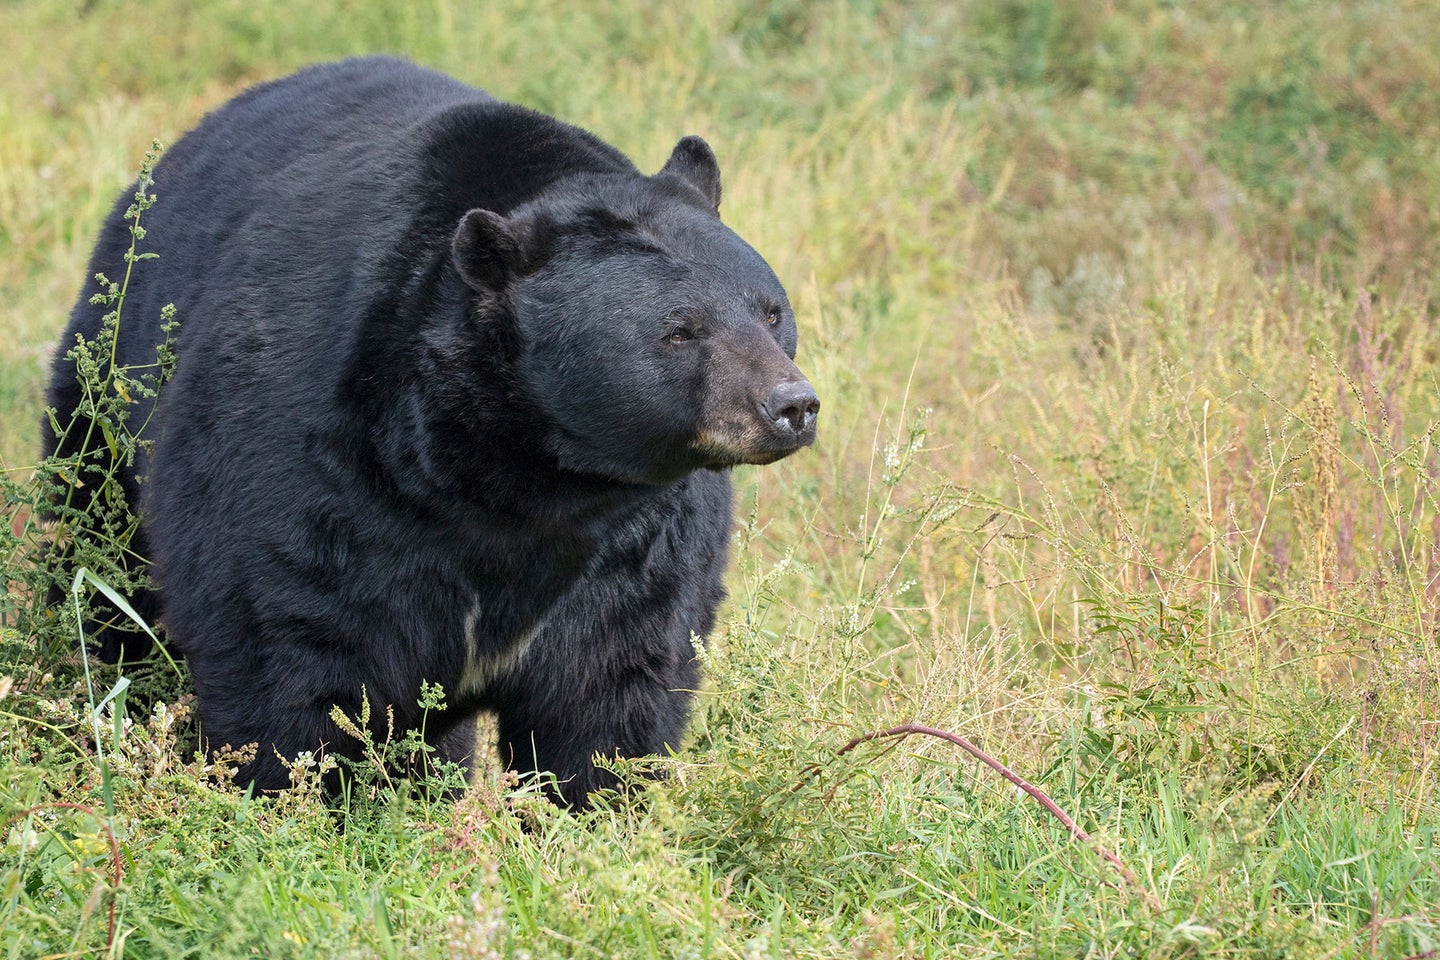 A large black bear walks through a field of grass.